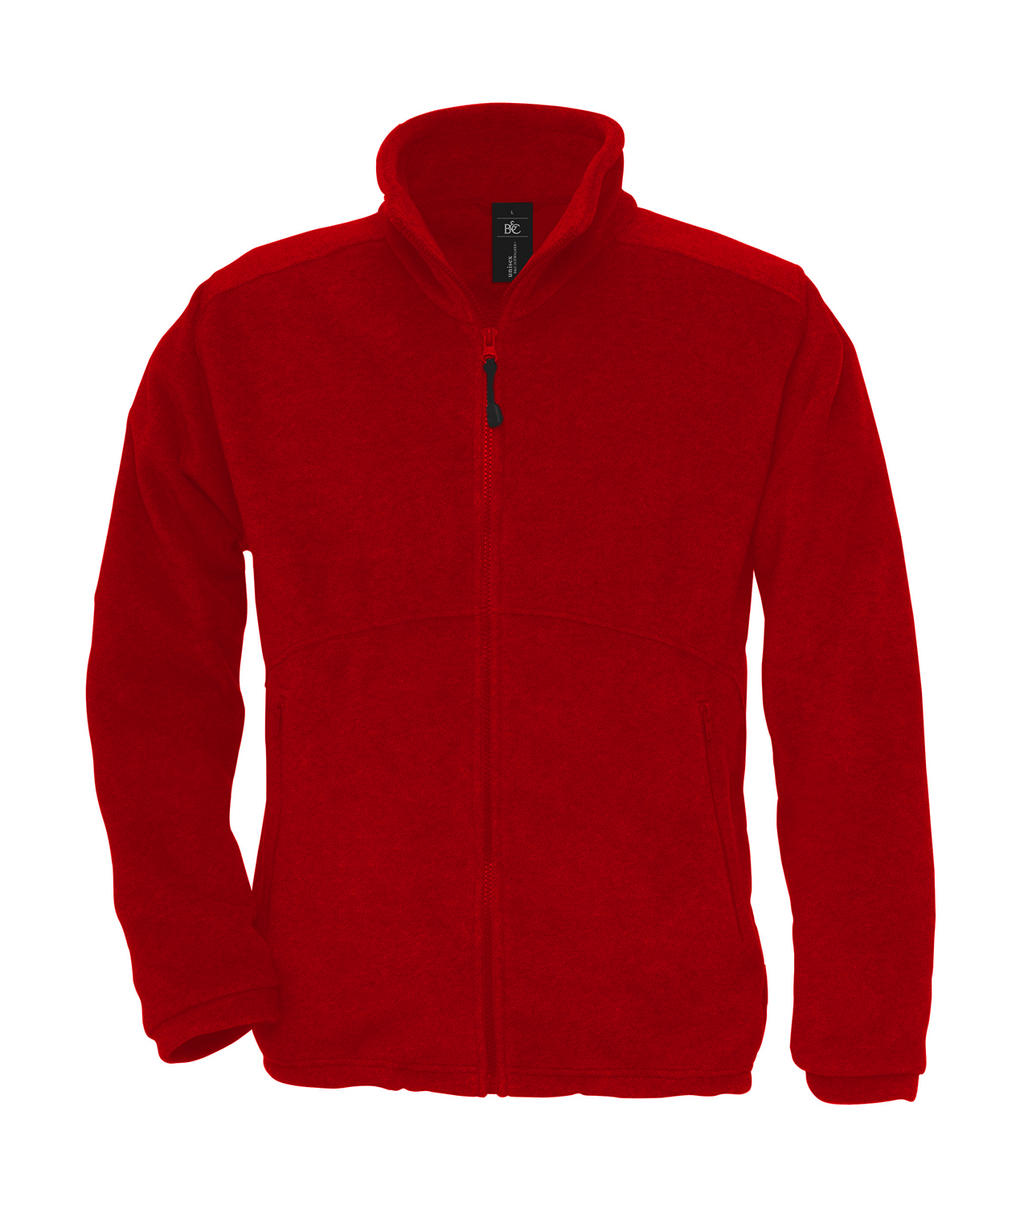  Icewalker+ Outdoor Full Zip Fleece in Farbe Red